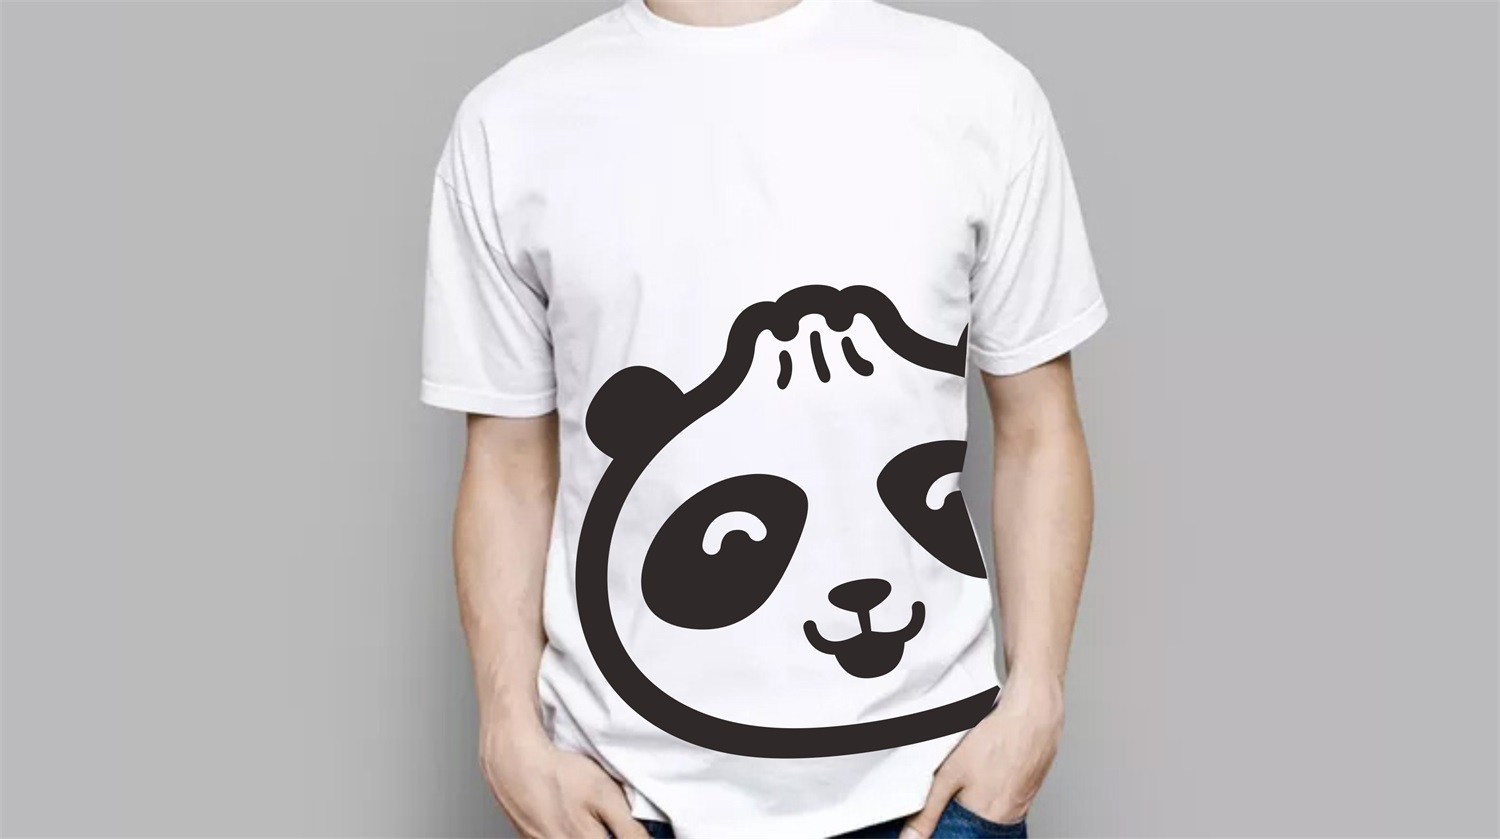 中式水煎包连锁餐饮品牌Panda Bao物料设计